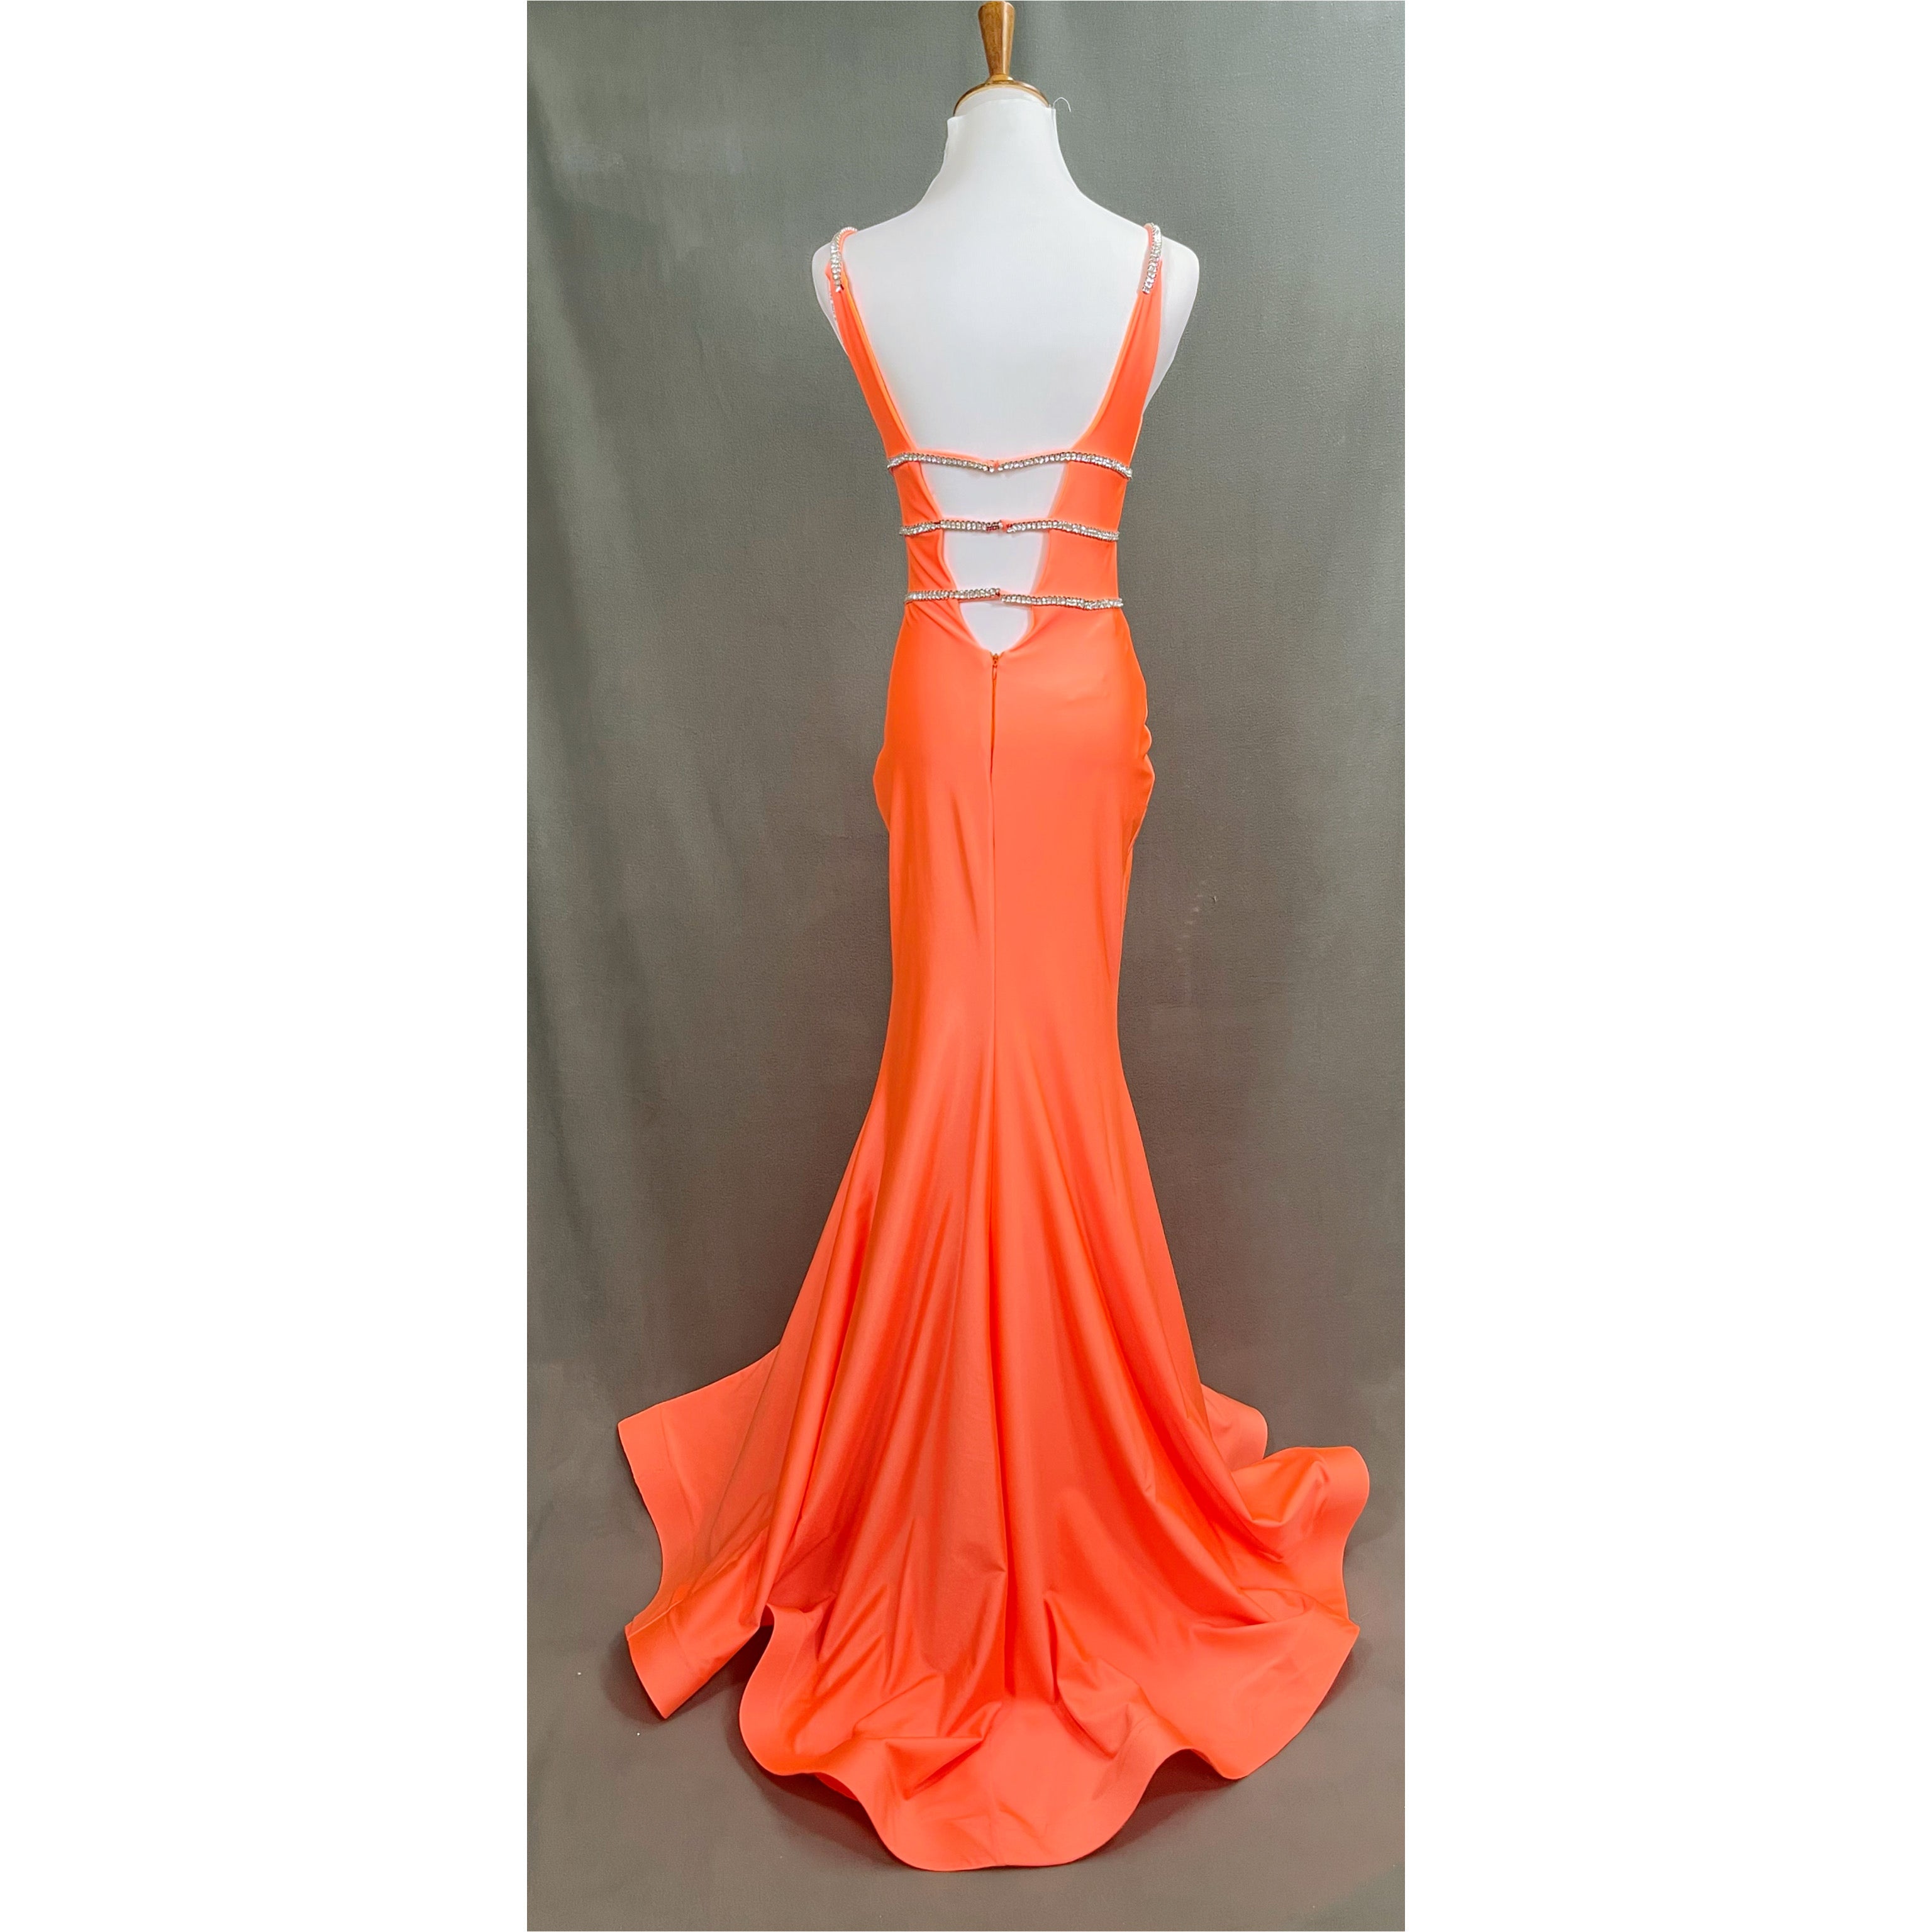 Jessica Angel neon orange dress, size S